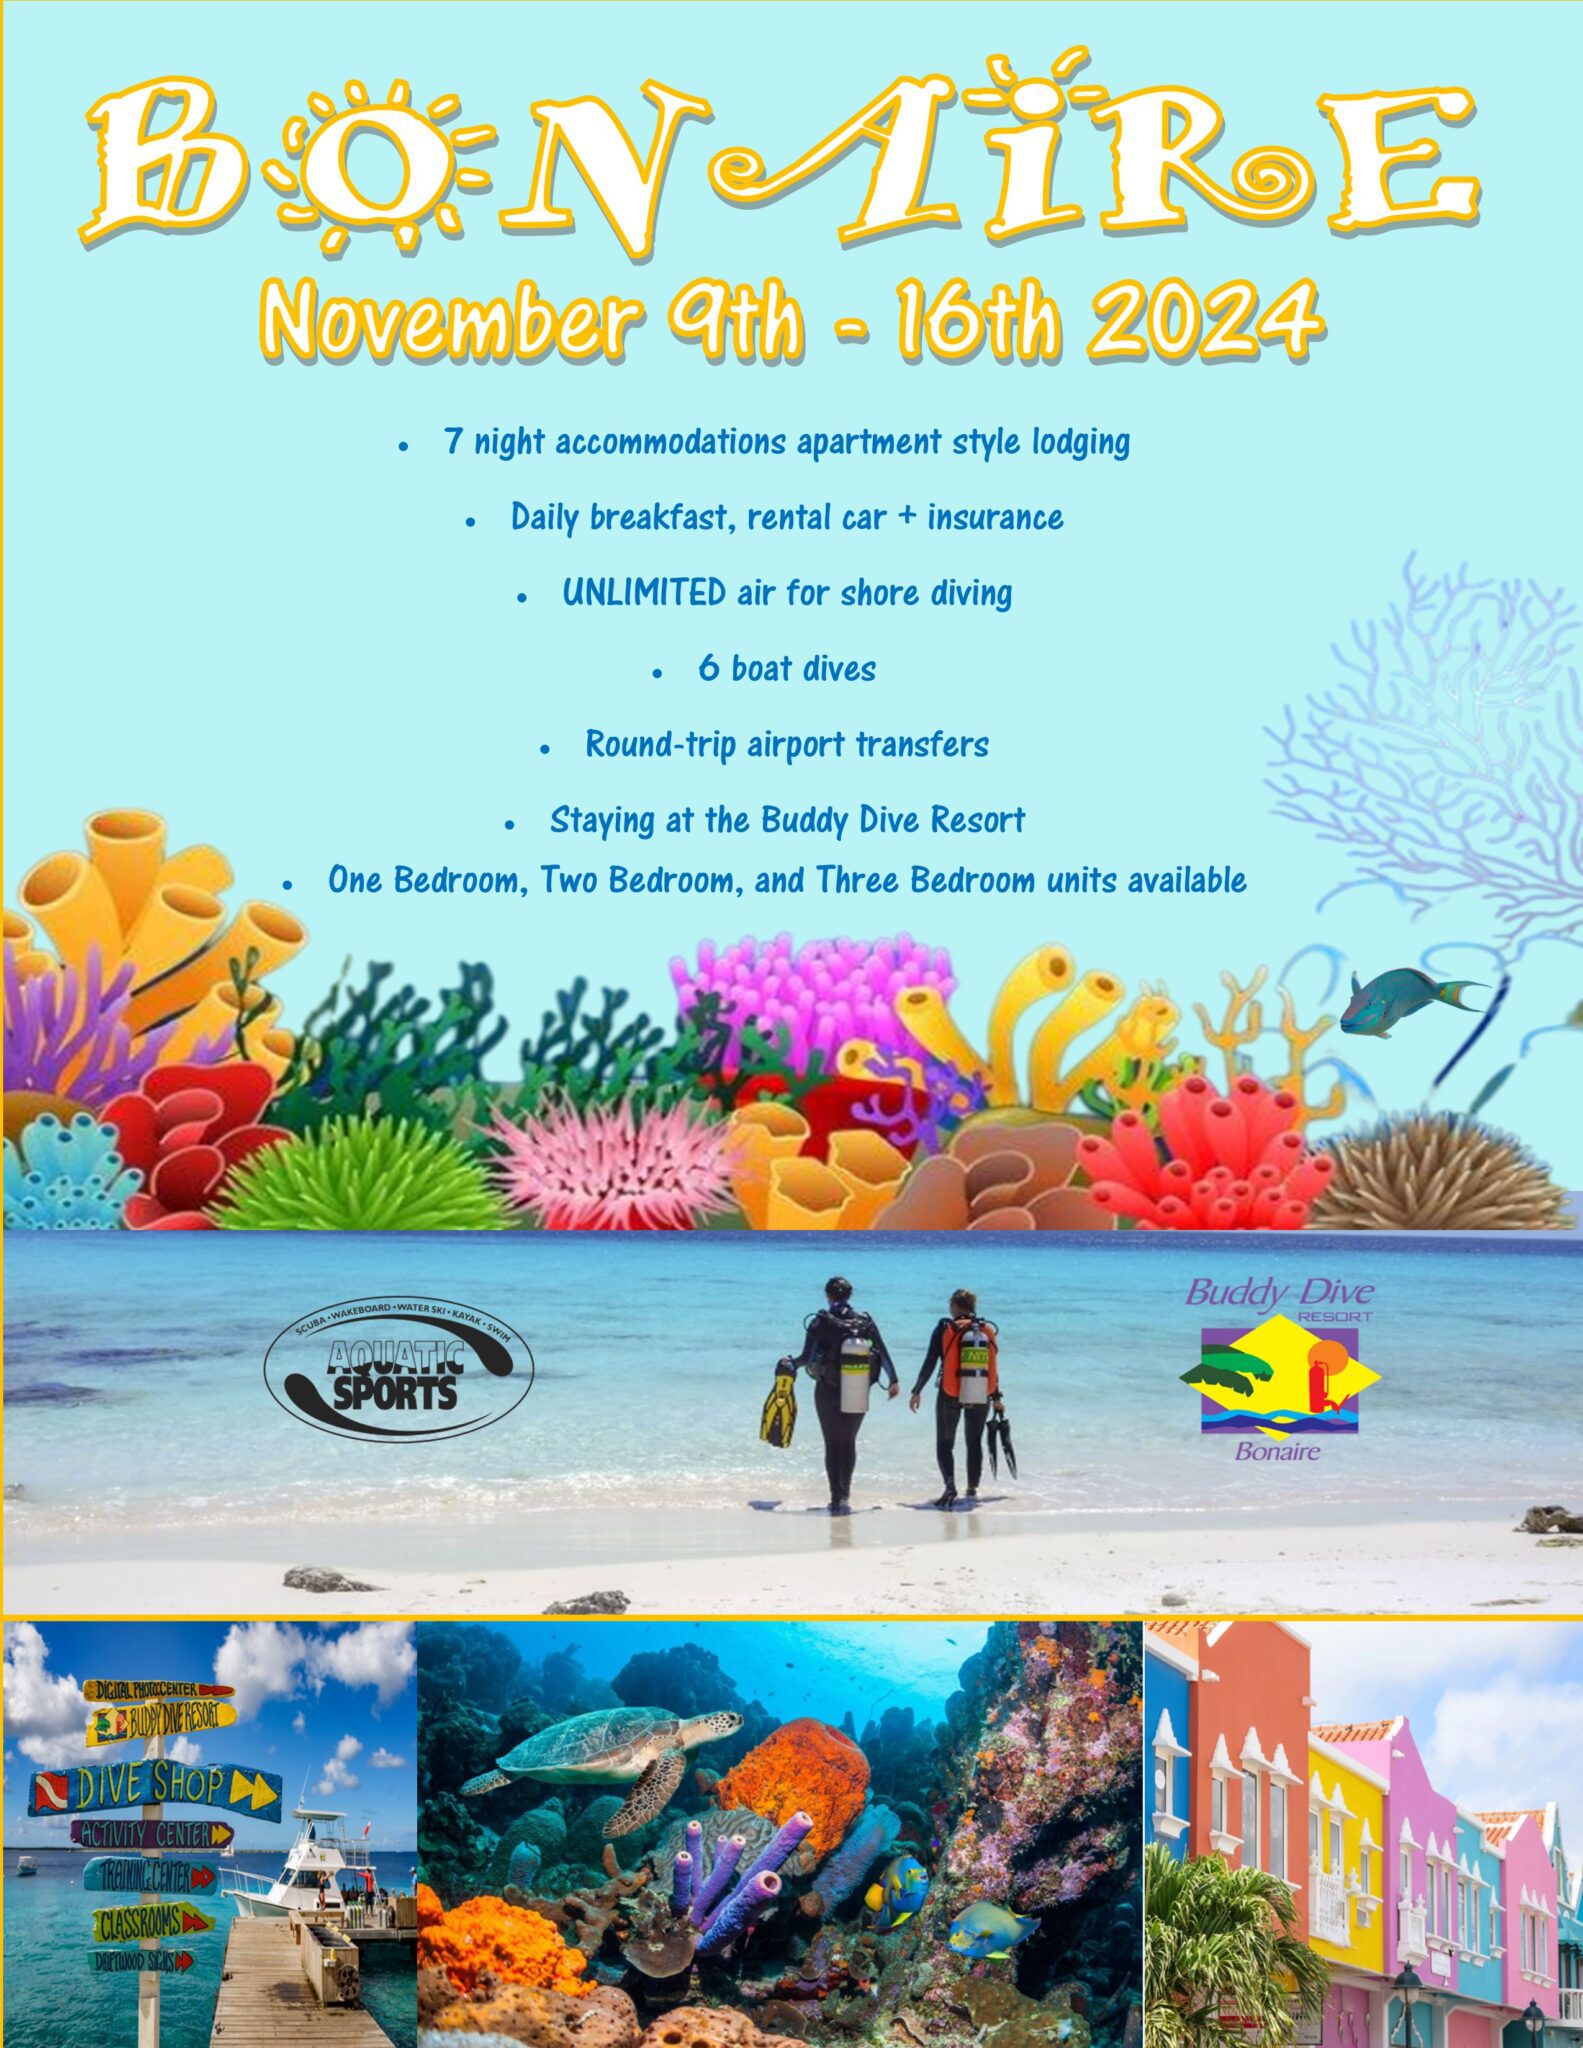 Dive Bonaire with Aquatic Sports!